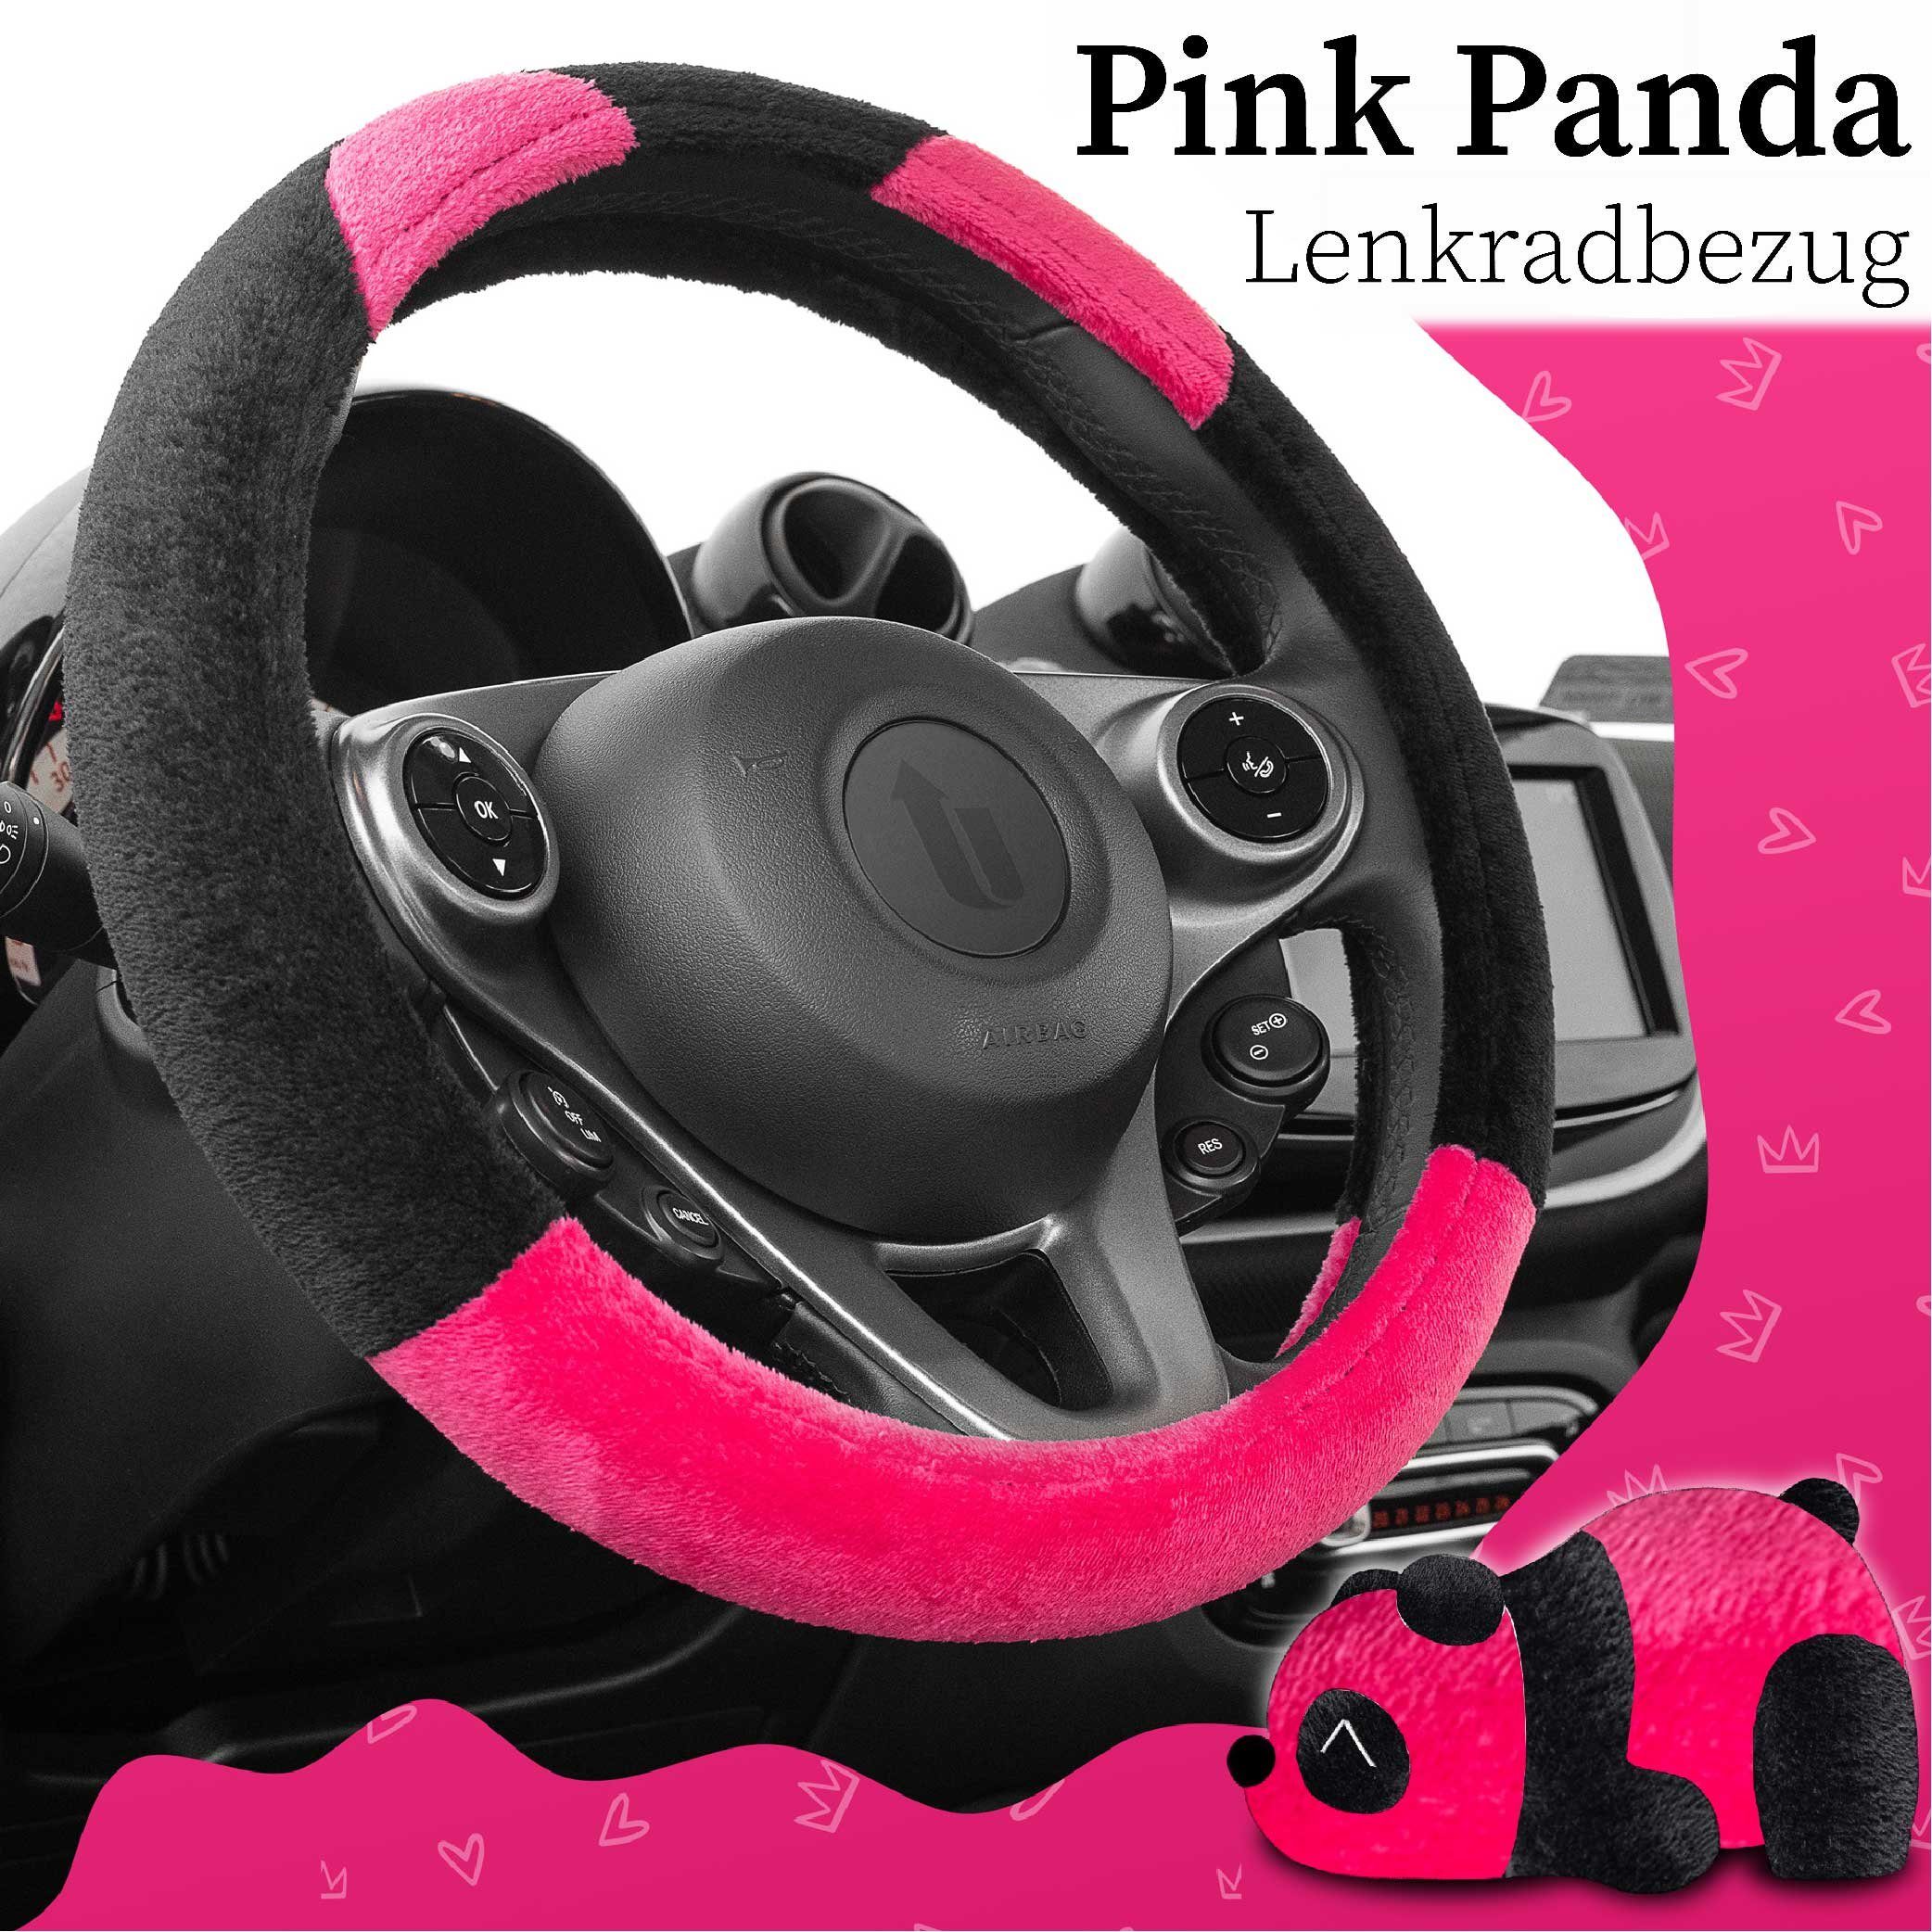 Plüschmaterial Pink mit entzückenden - Designs 37,00 Upgrade4cars 39,00 Teddybären Lenkradbezug Ø Weiches Plüsch, cm, von